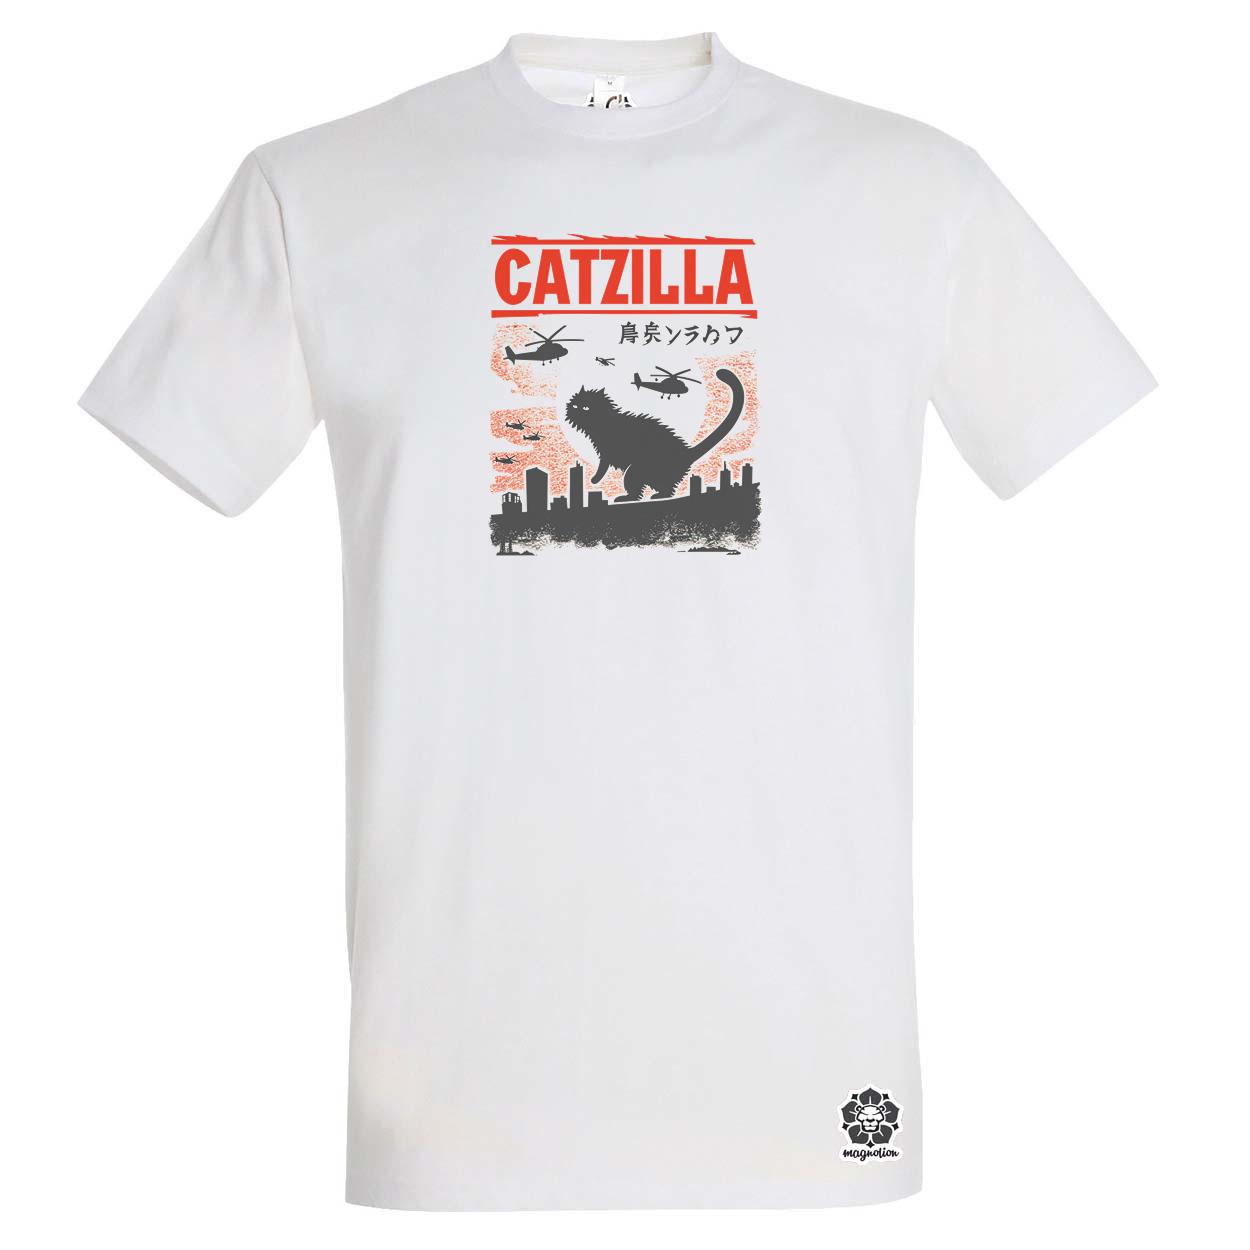 Catzilla v8